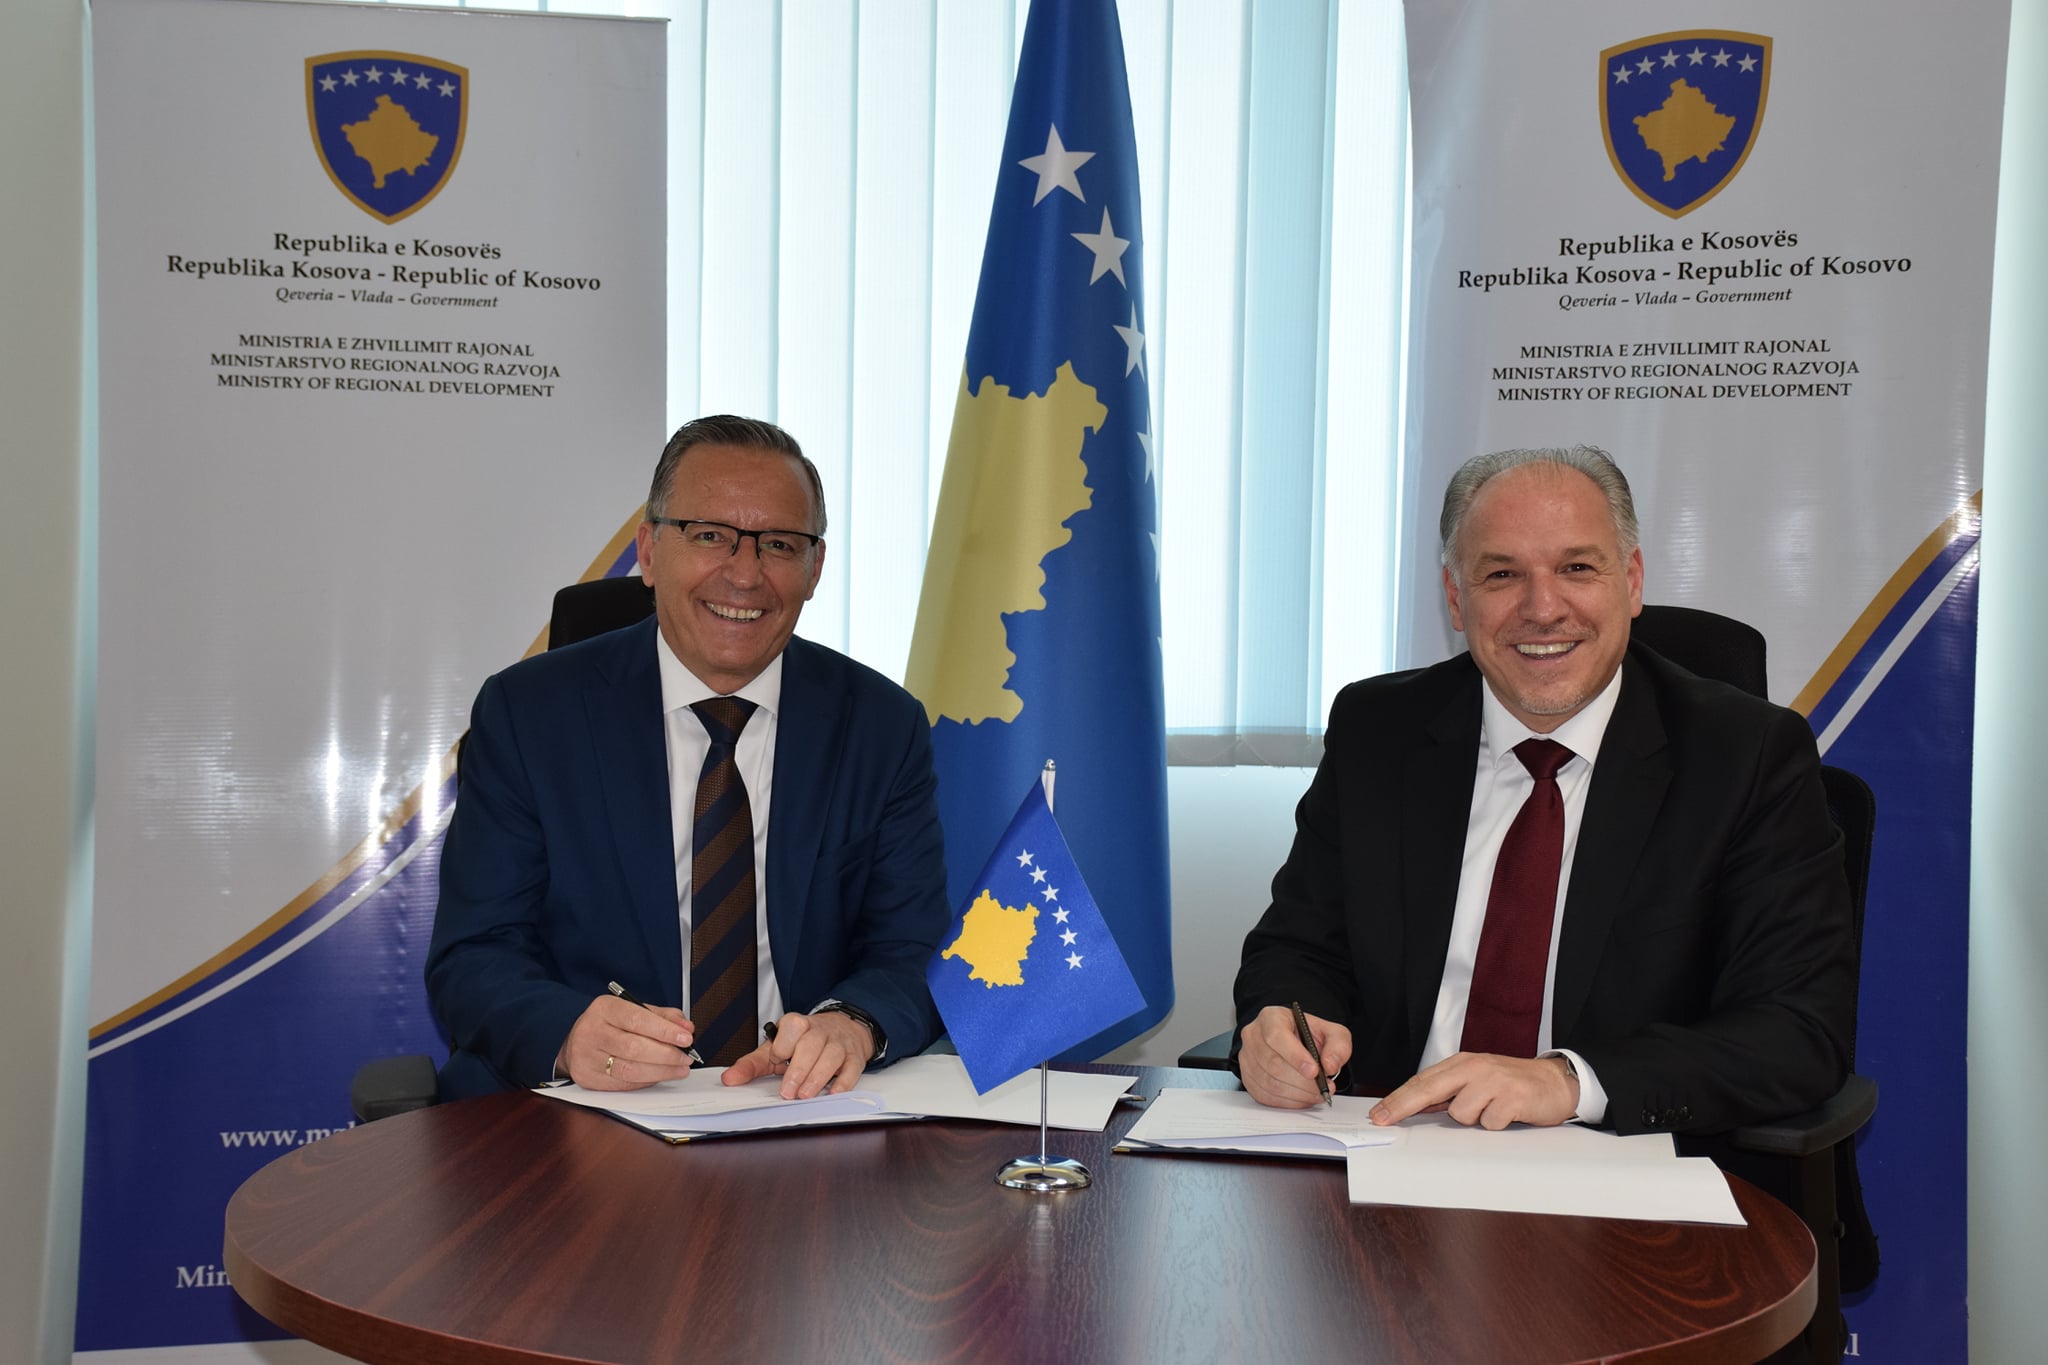 Ministria e Zhvillimit Rajonal nënshkruan Marrëveshjen e Mirëkuptimit me komunën përfituese të Mitrovicës në kuadër të Programit për Zhvillim Rajonal PZHR 2022